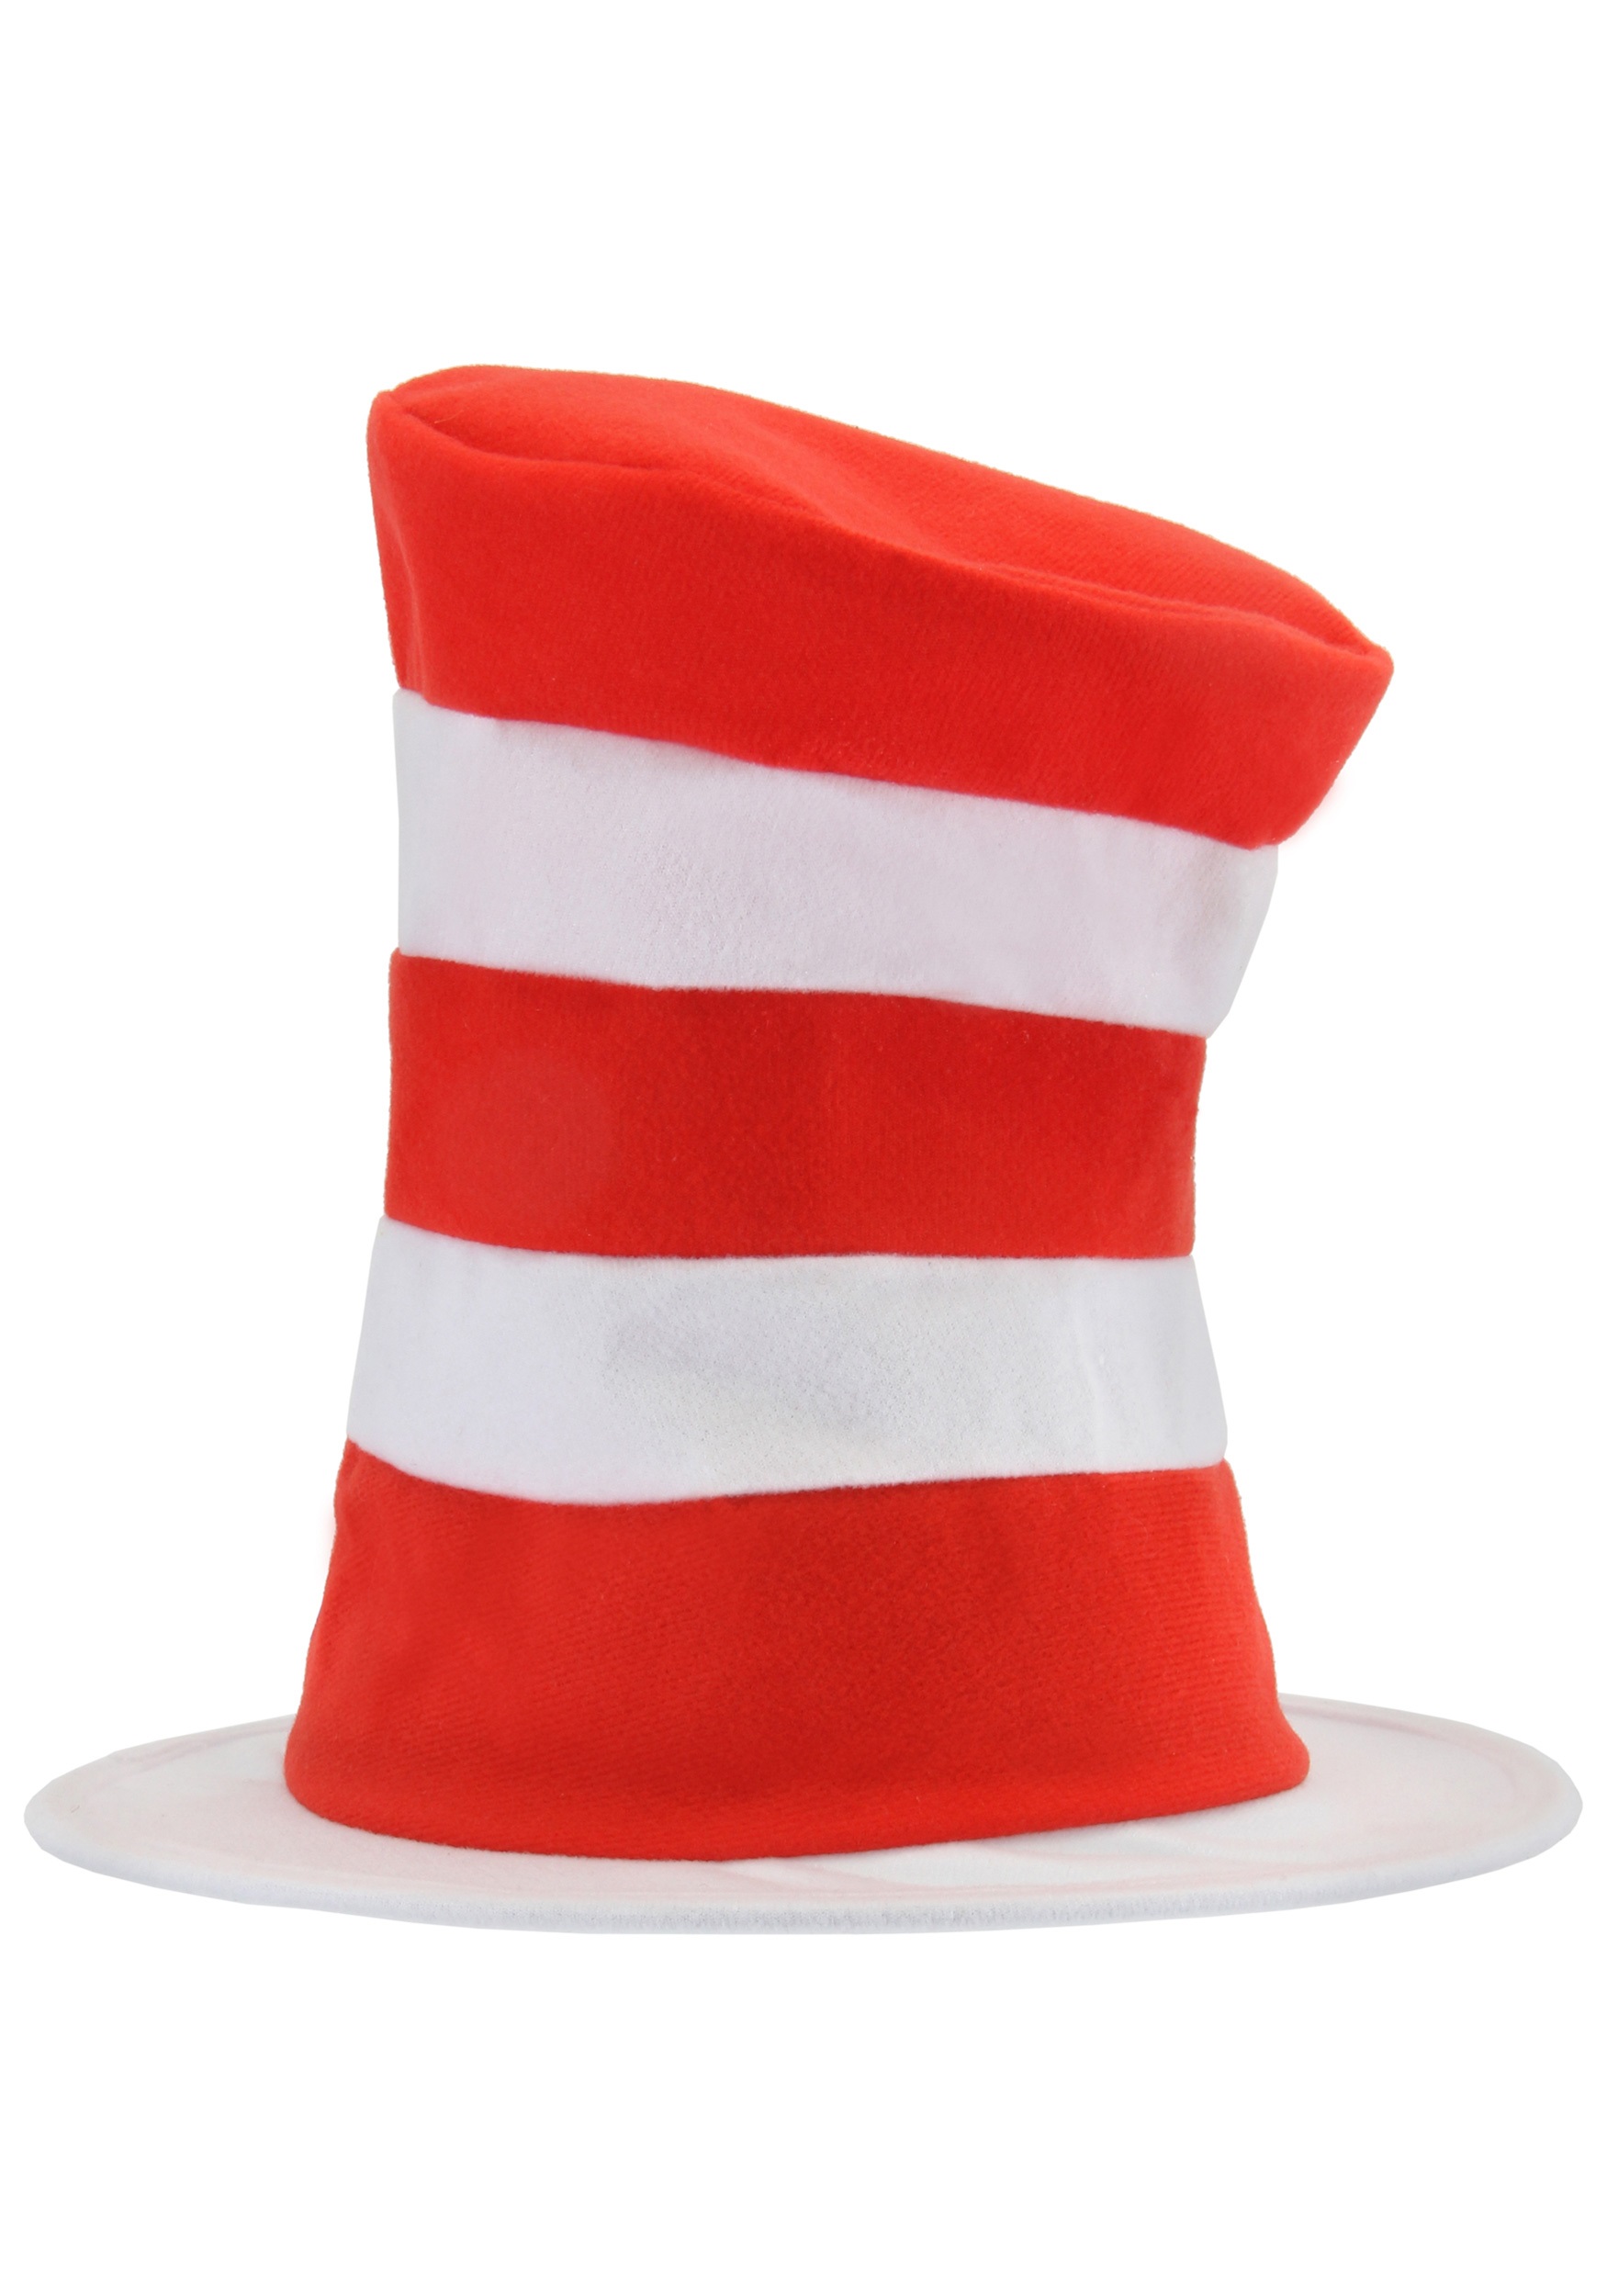 Dr hat. Шляпа красная. Полосатая шляпа. Белая шляпа в красную полоску. Шляпа в полоску.